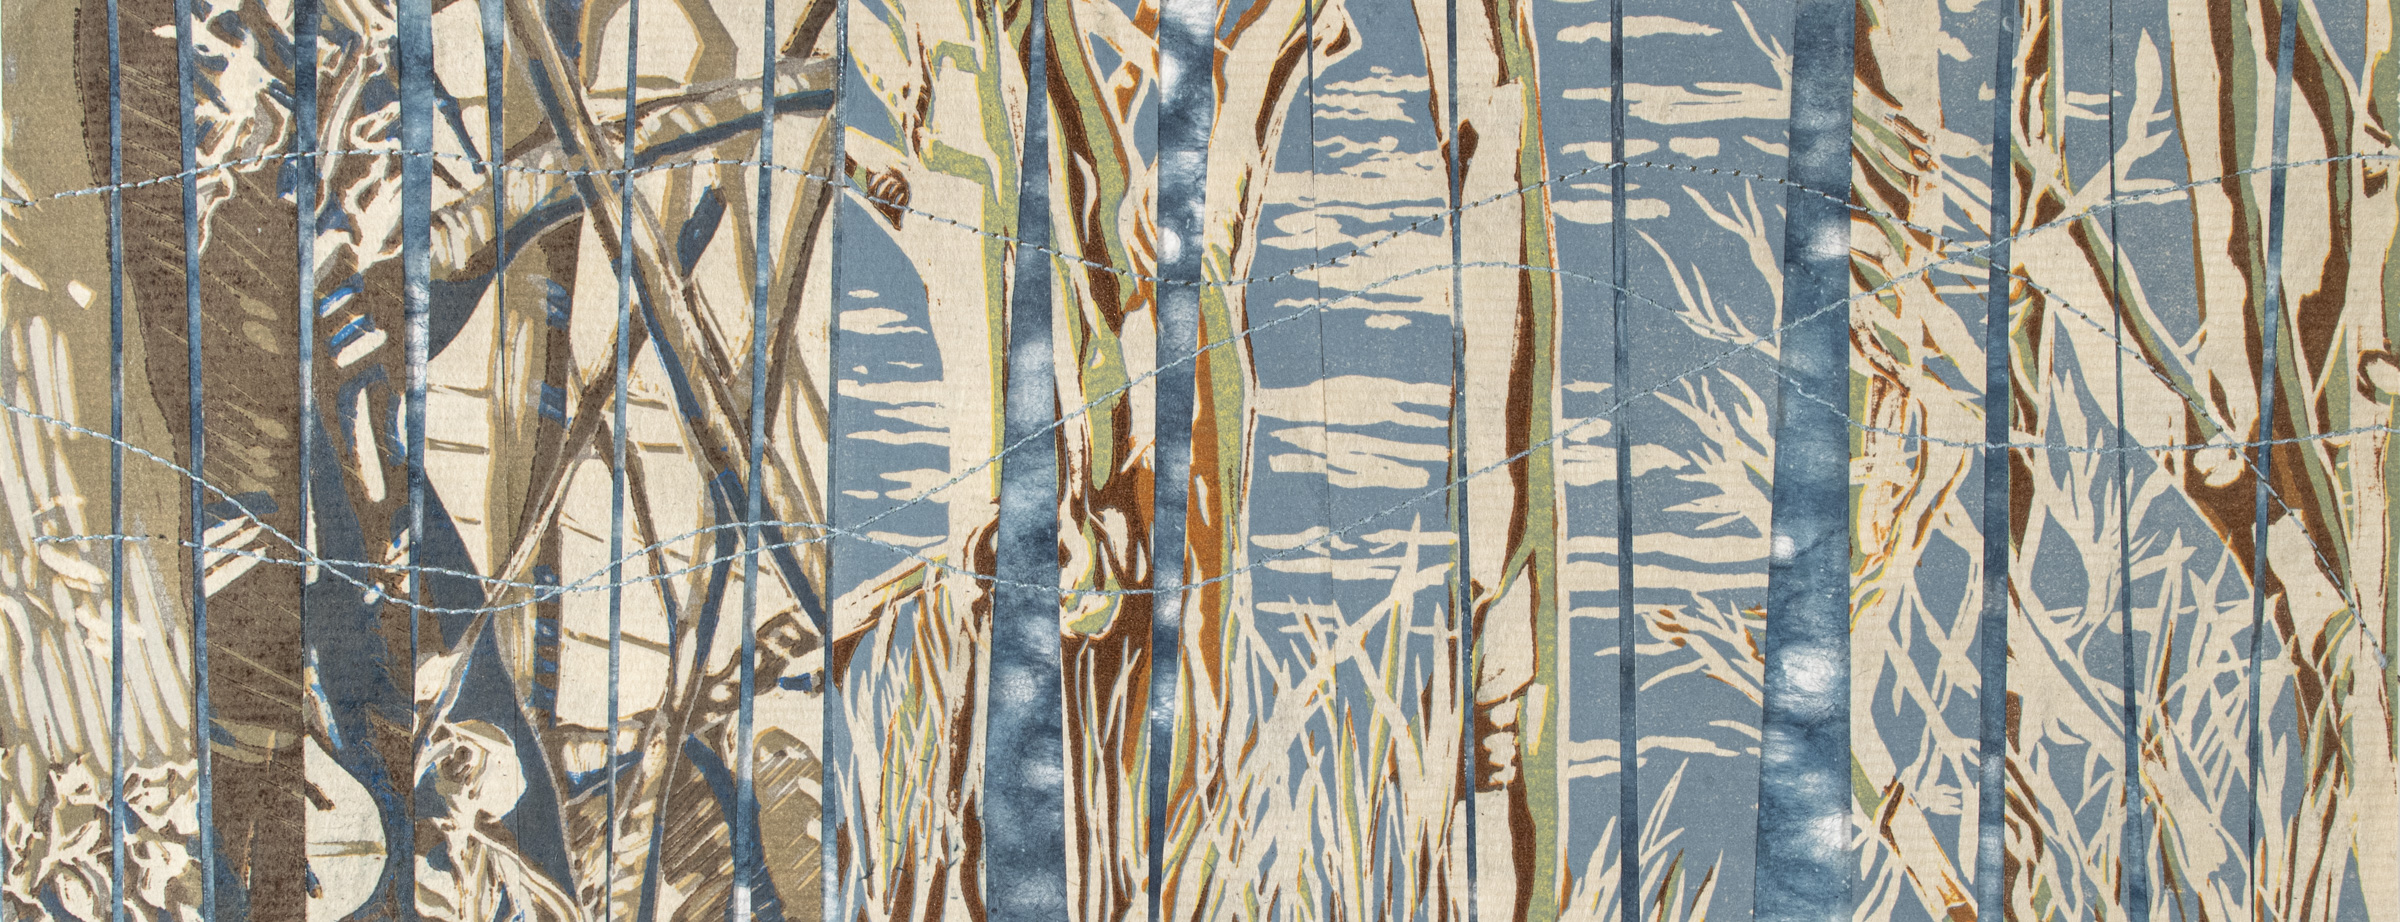 relief print, indigo dyed hemp paper, collage, stitching